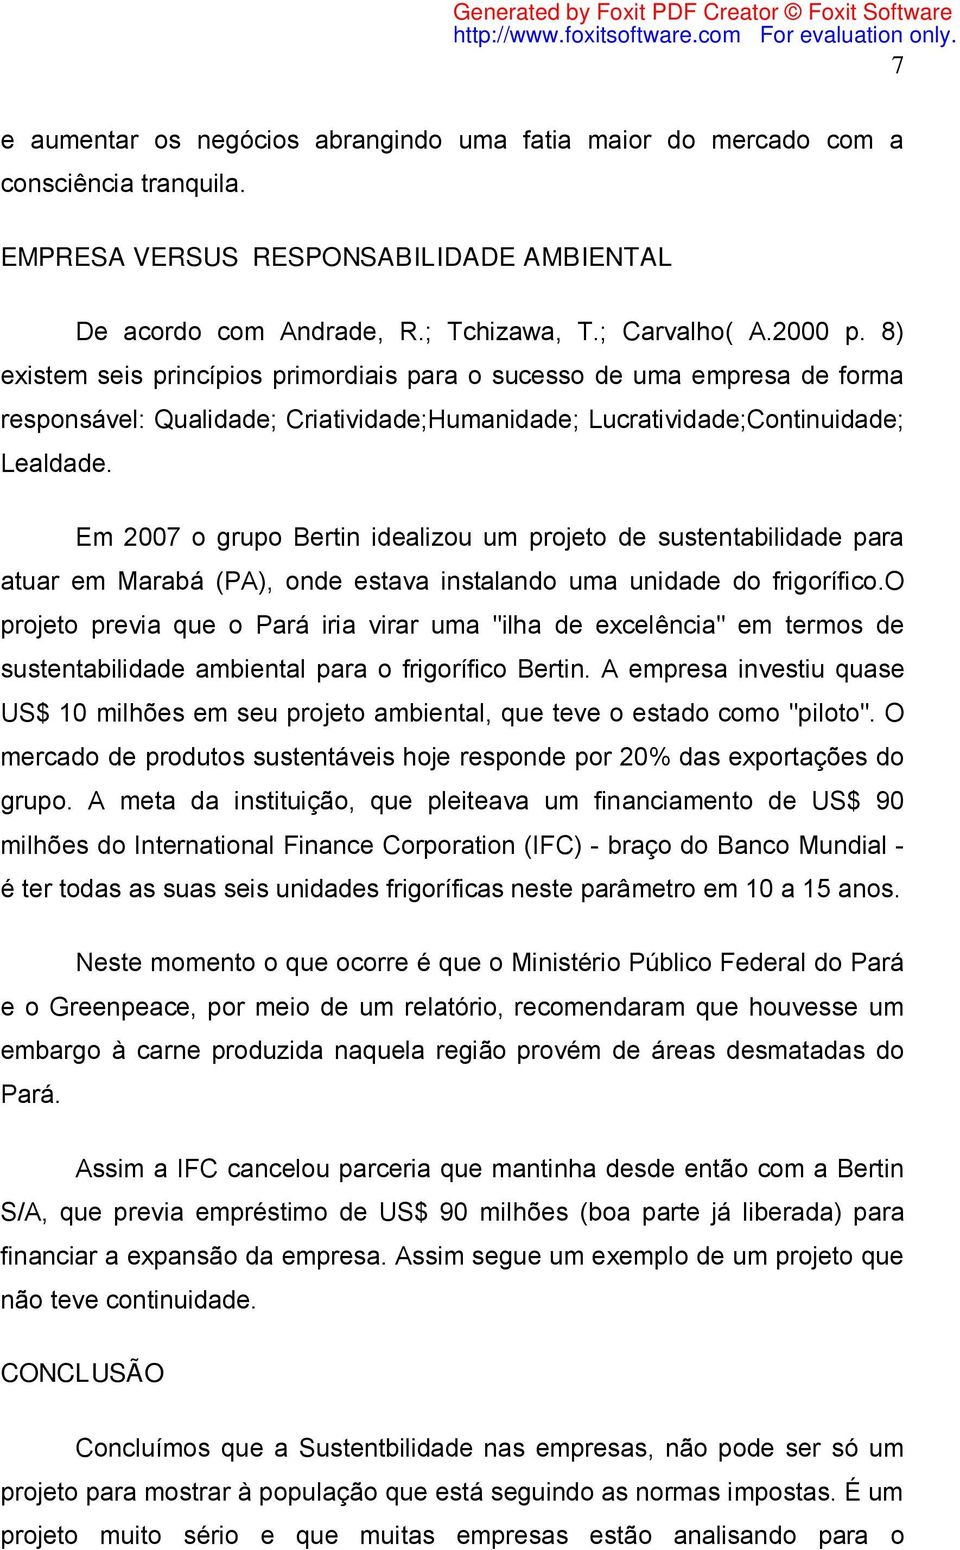 Em 2007 o grupo Bertin idealizou um projeto de sustentabilidade para atuar em Marabá (PA), onde estava instalando uma unidade do frigorífico.